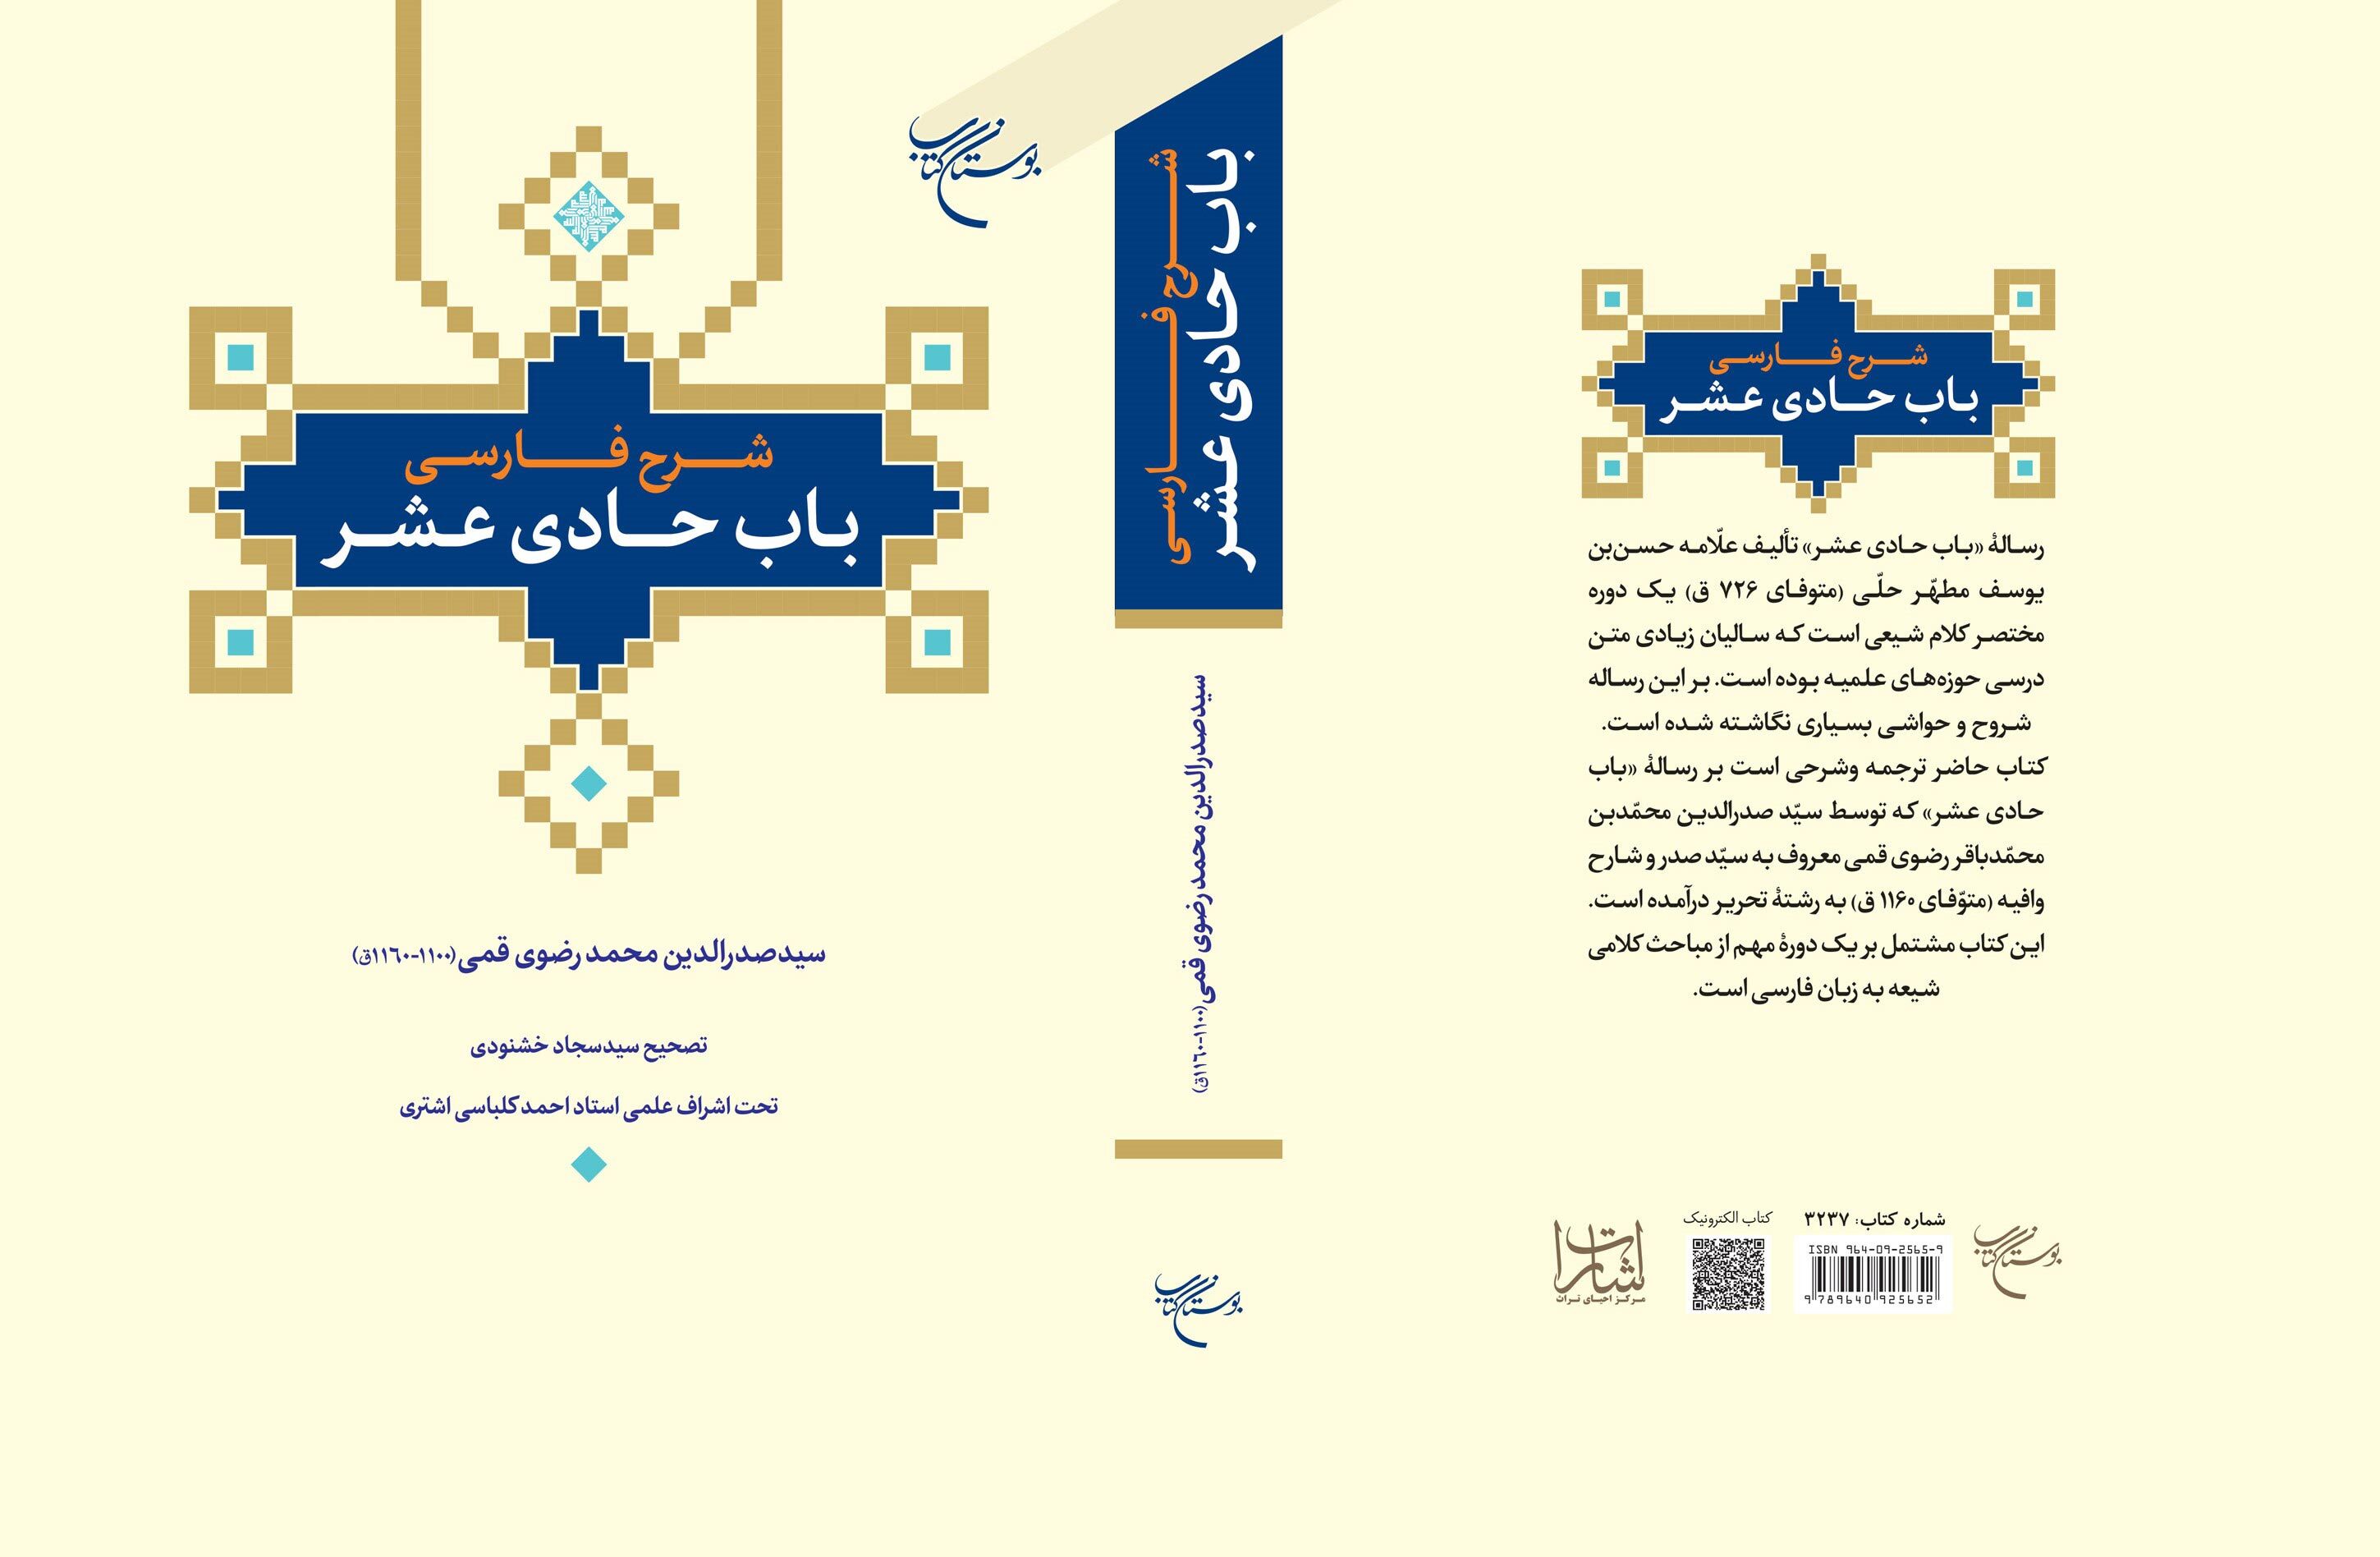 کتاب «شرح فارسی باب حادی عشر» روانه بازار نشر شد + لینک/ م